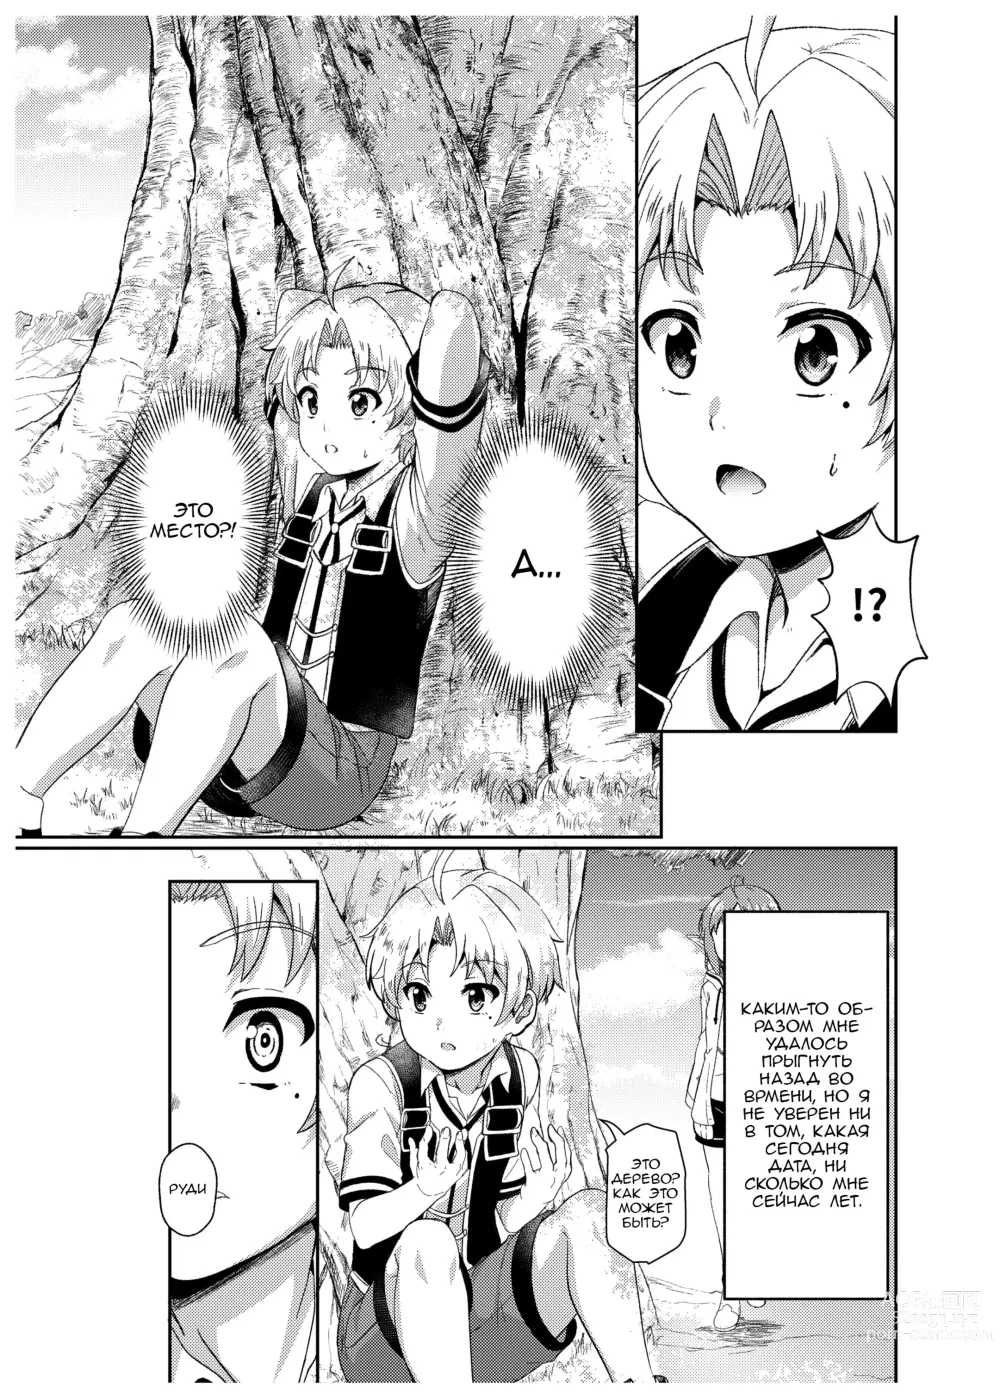 Page 7 of doujinshi Временная линия Сильфи